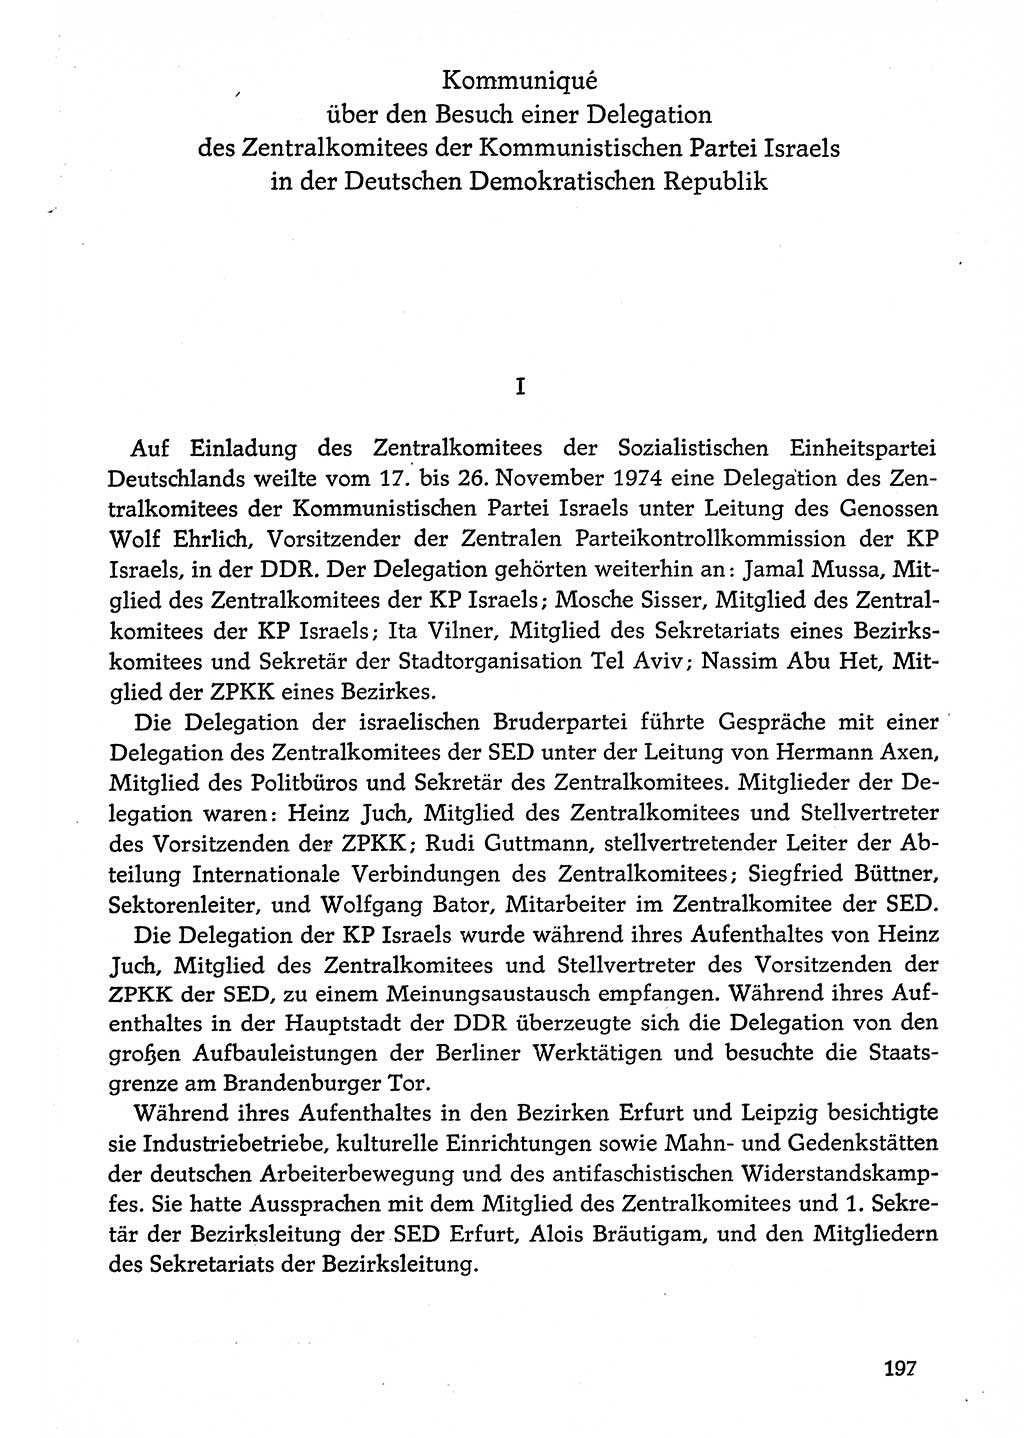 Dokumente der Sozialistischen Einheitspartei Deutschlands (SED) [Deutsche Demokratische Republik (DDR)] 1974-1975, Seite 197 (Dok. SED DDR 1978, Bd. ⅩⅤ, S. 197)